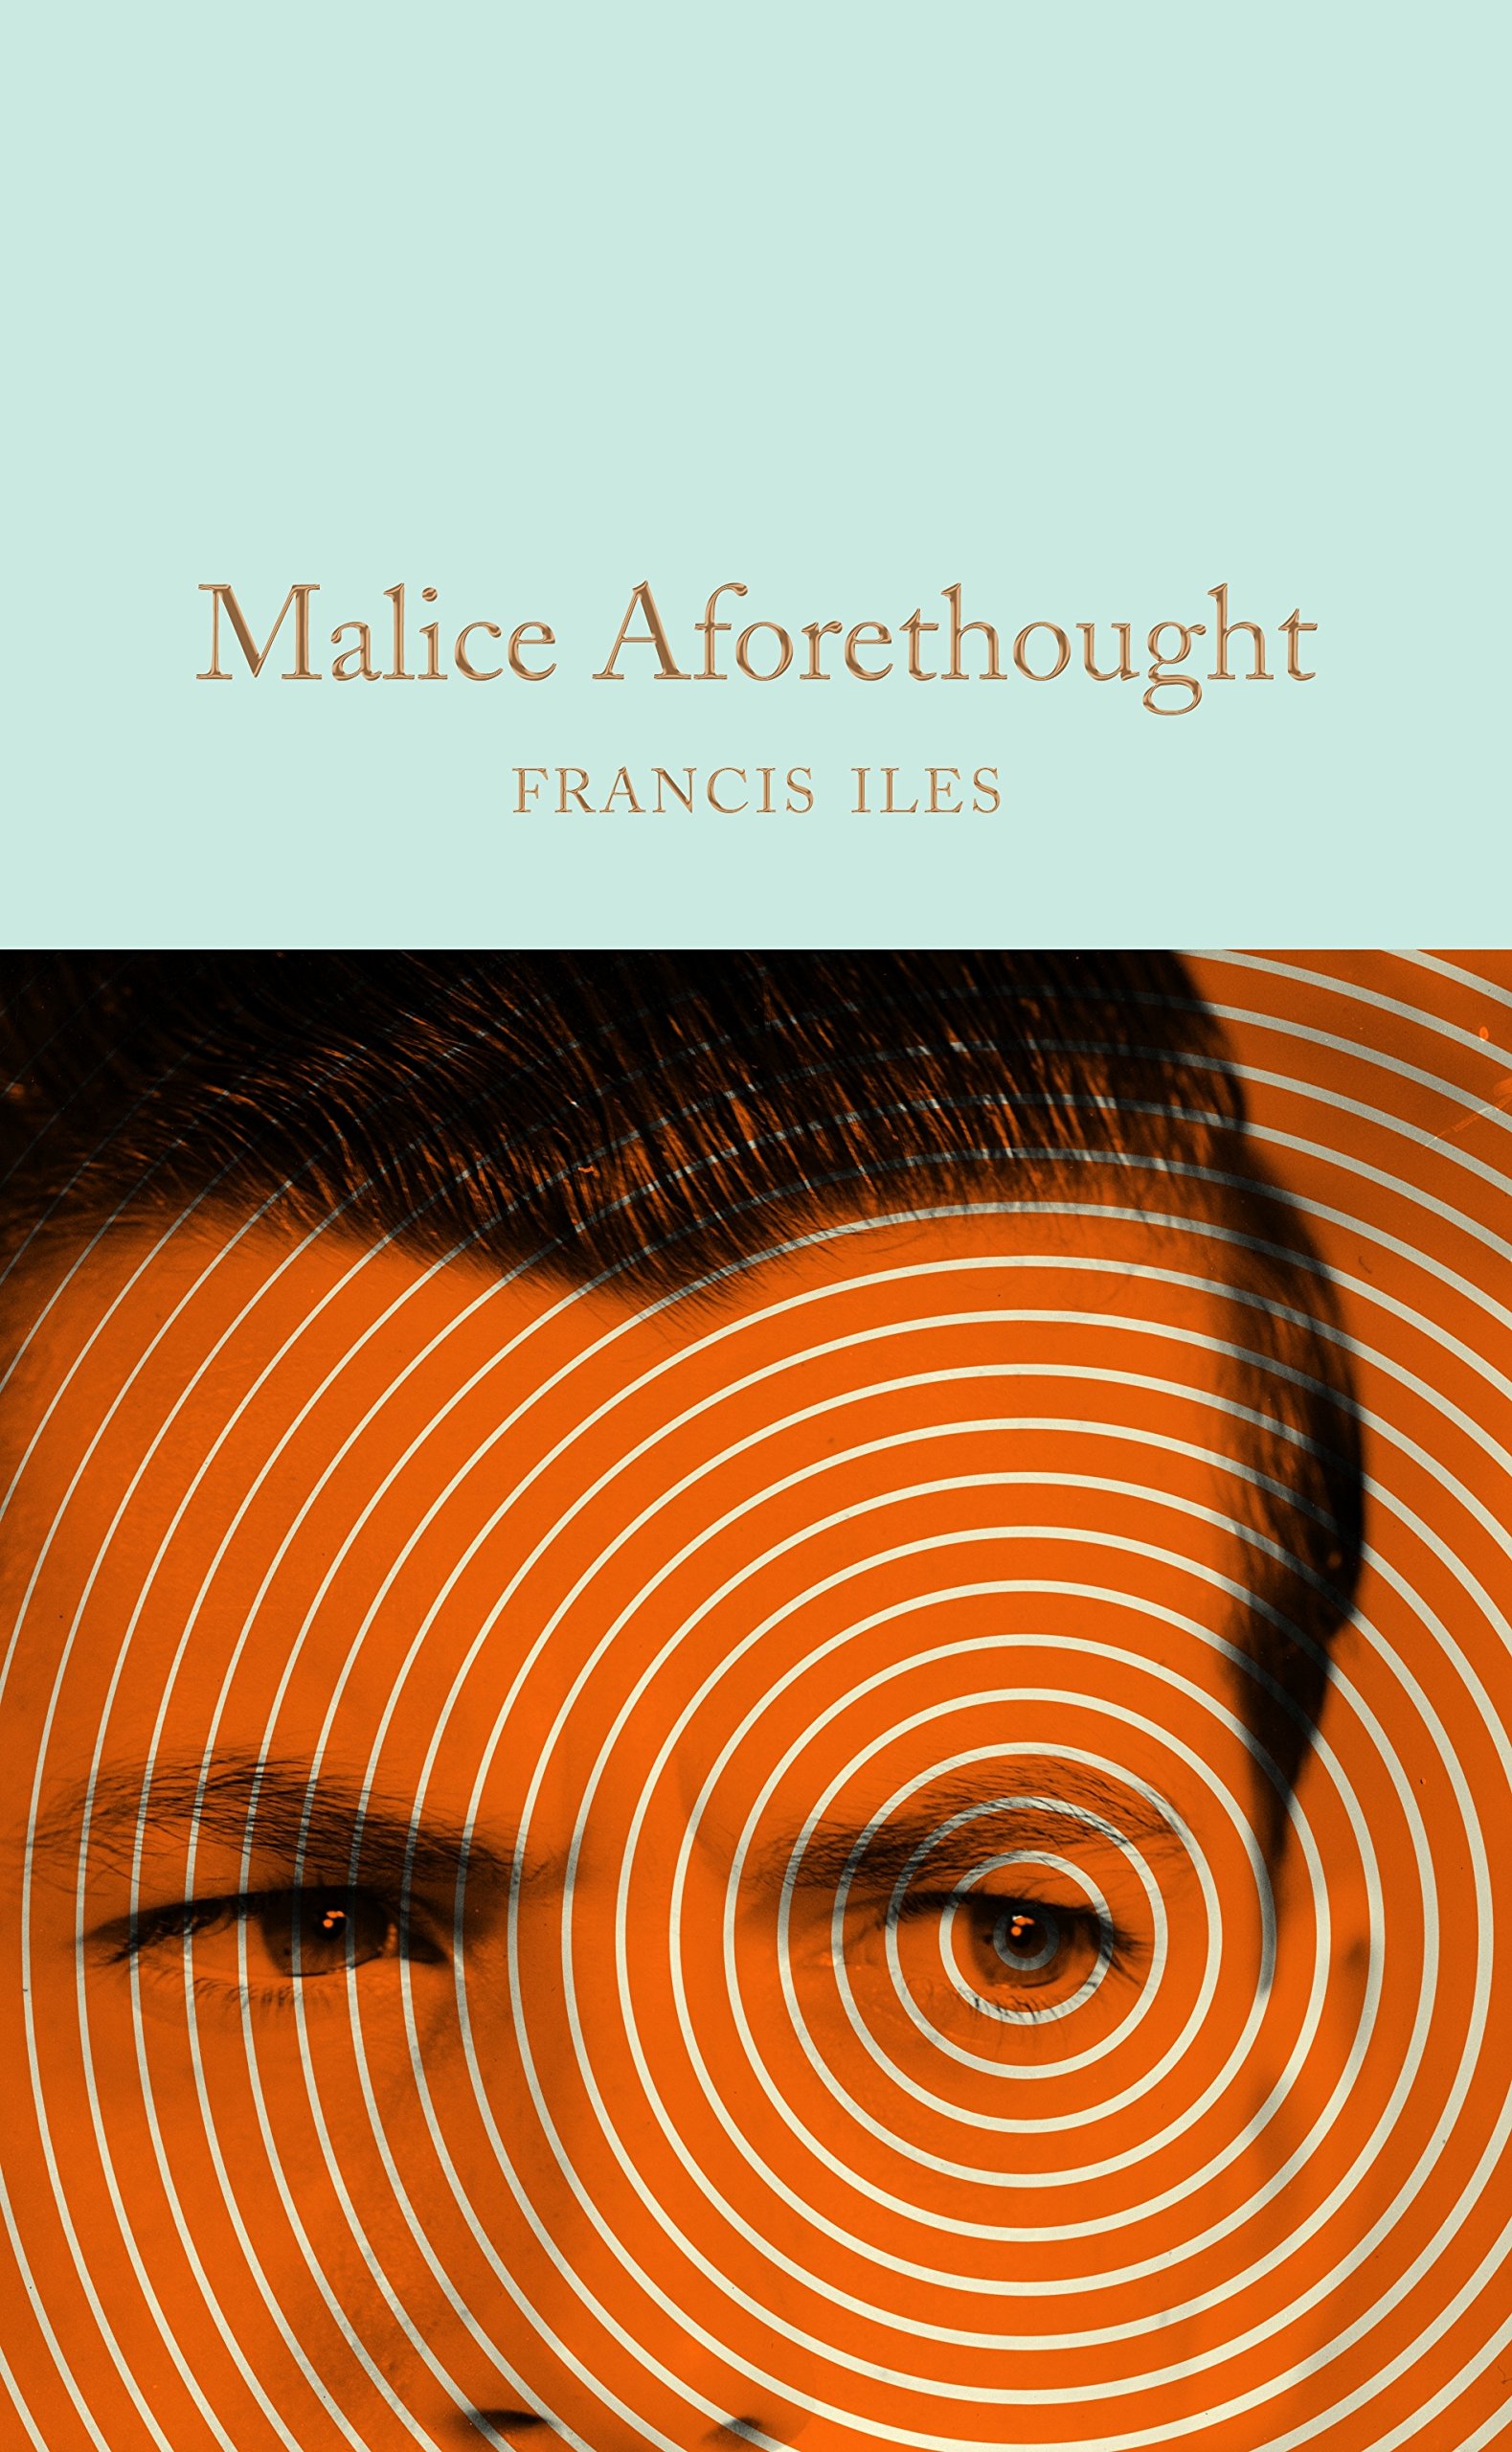 Malice Aforethough | Francis Iles image1